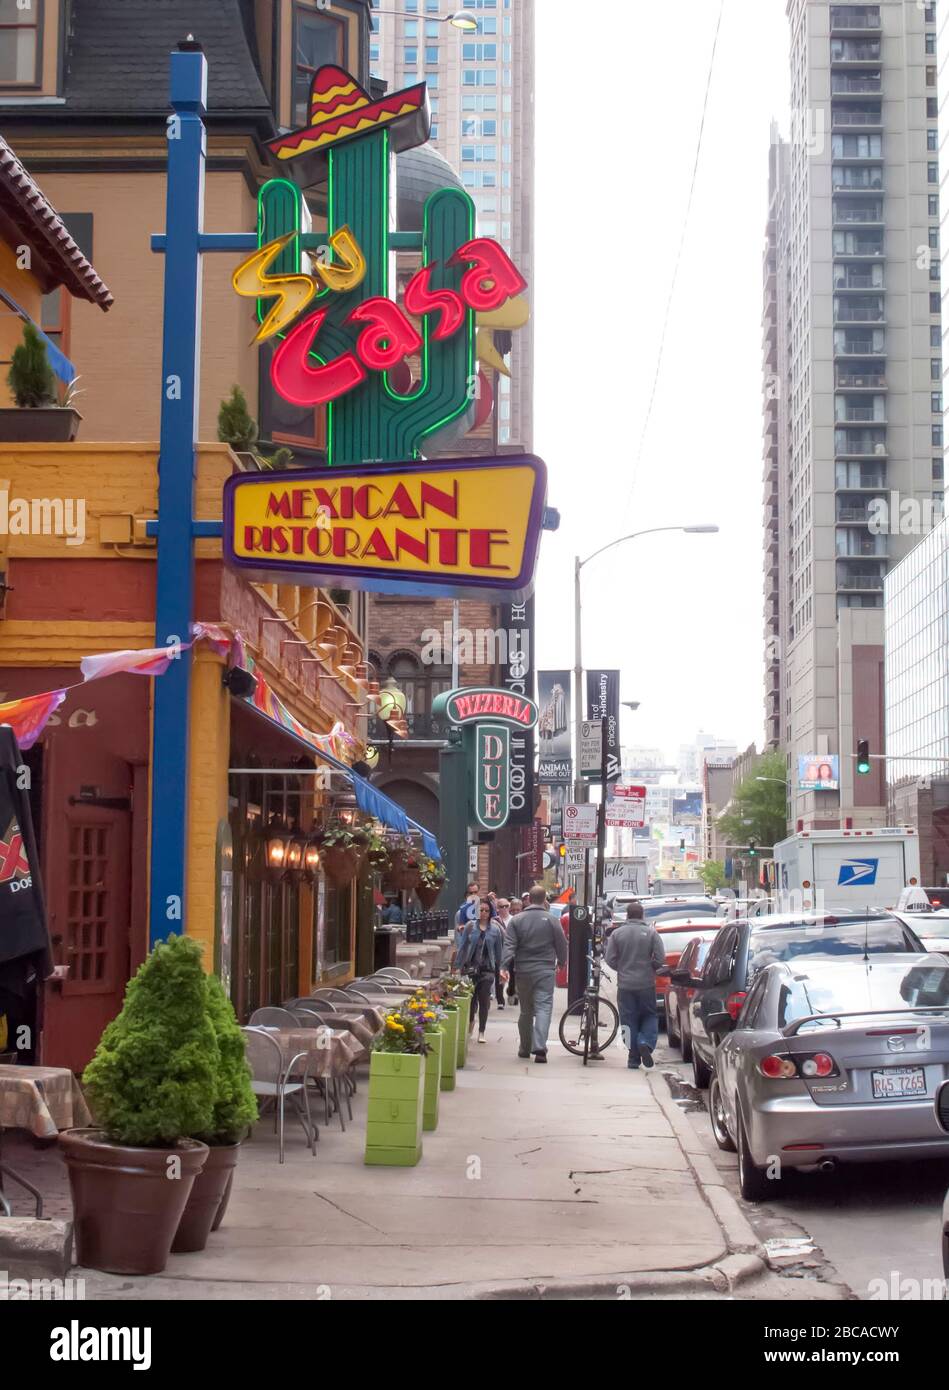 Restaurant mexicain à Chicago avec orthographe italienne 'Ristorante' Banque D'Images